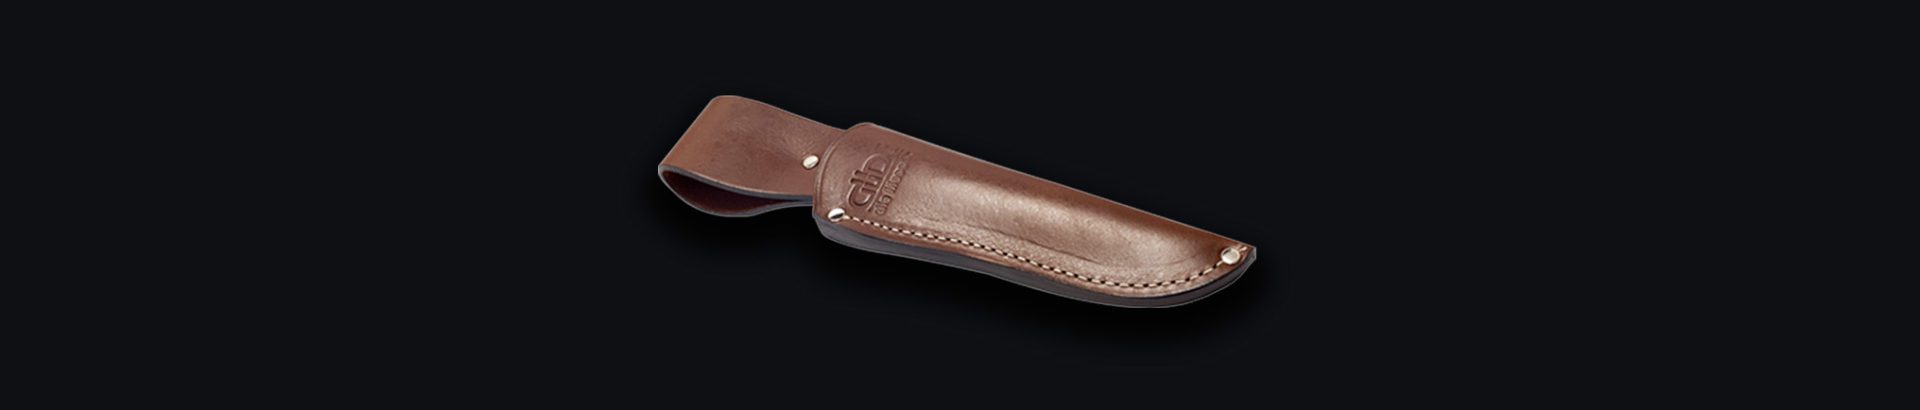 Güde Messerscheide 5200/21 aus Leder 21 cm für Santoku und Kochmesser